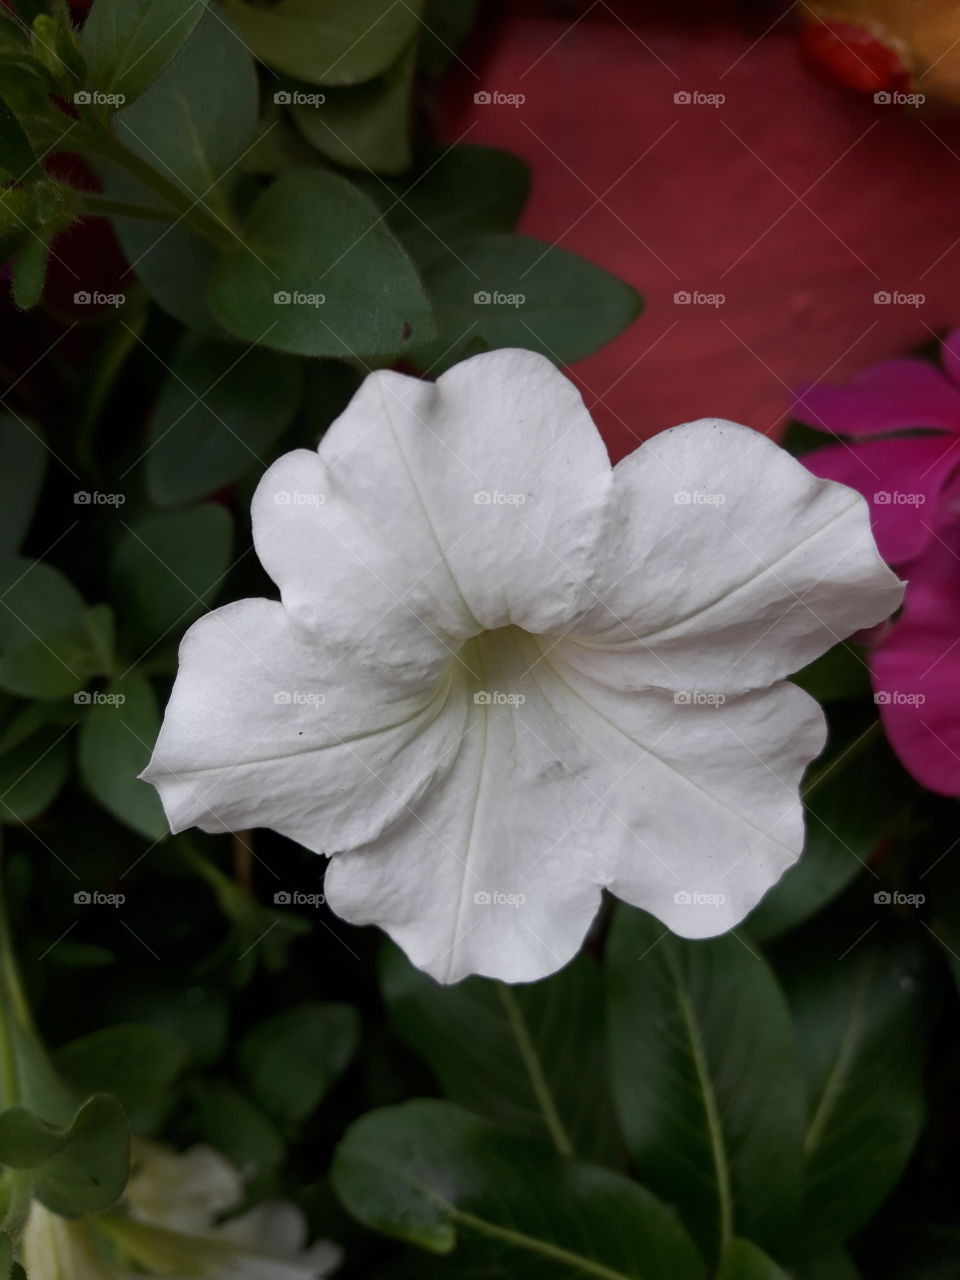 white flower has five delicate petals.